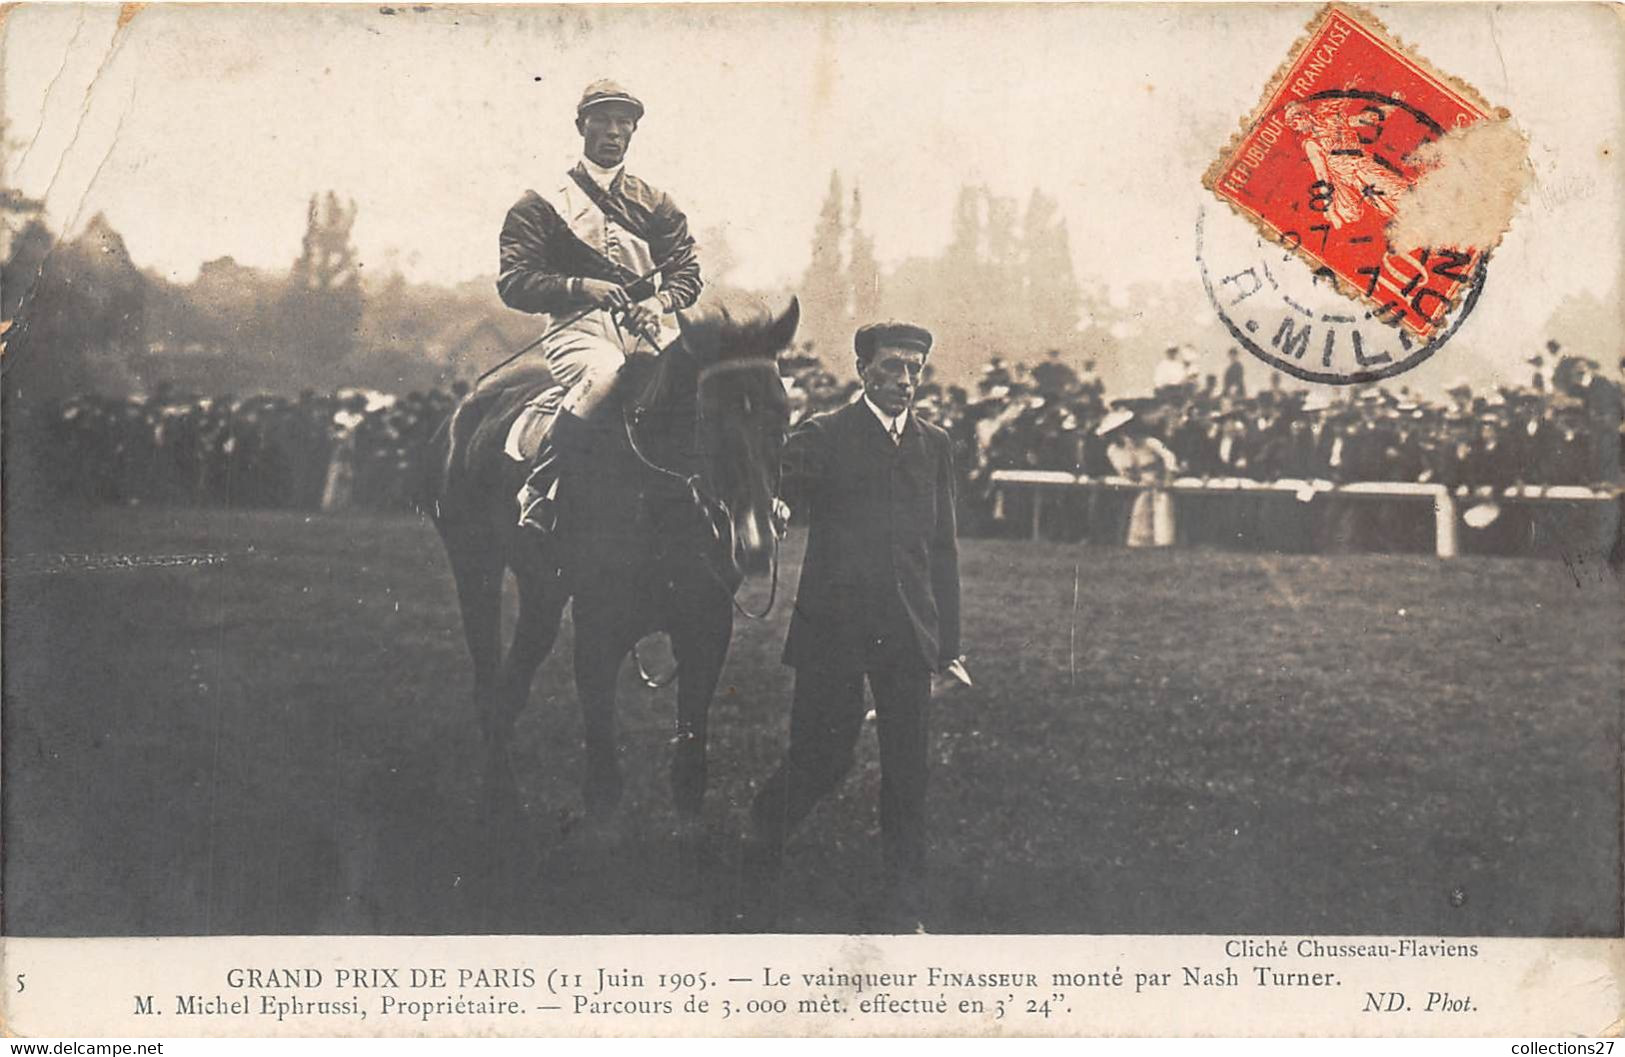 GRAND PRIX DE PARIS 11 JUIN 1905-CARTE-PHOTO-LE VAINQUEUR FINASSEUR MONTE PAR NASH TURNER - Reitsport